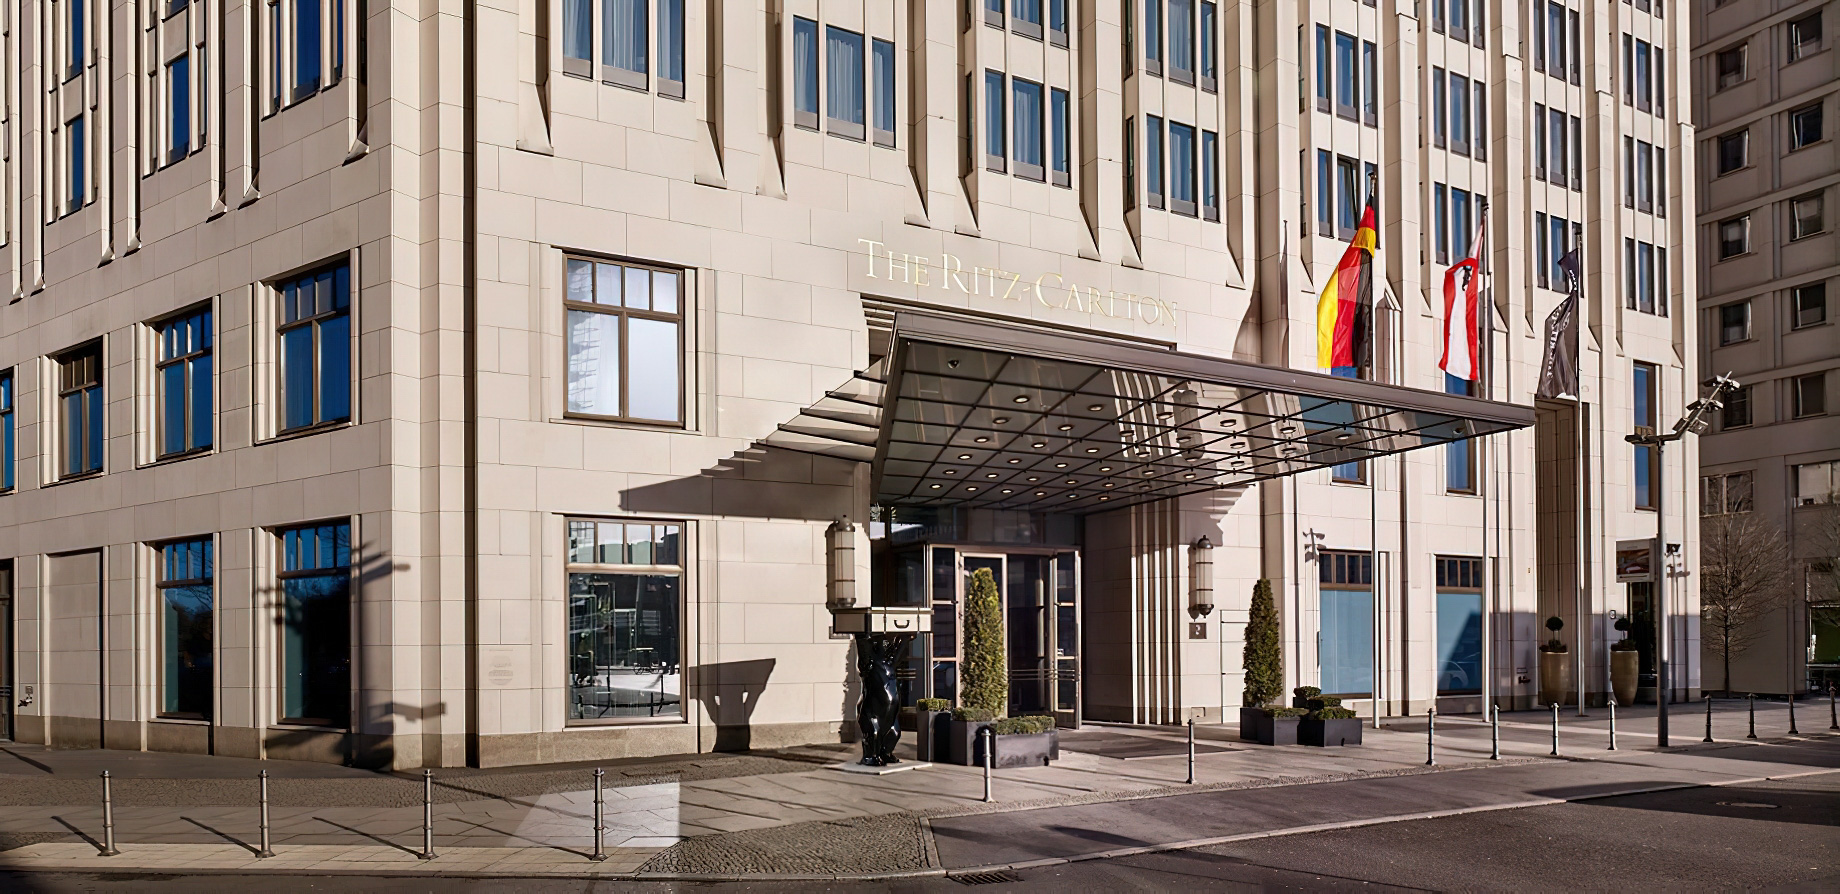 The Ritz-Carlton, Berlin Hotel – Berlin, Germany – Front Entrance